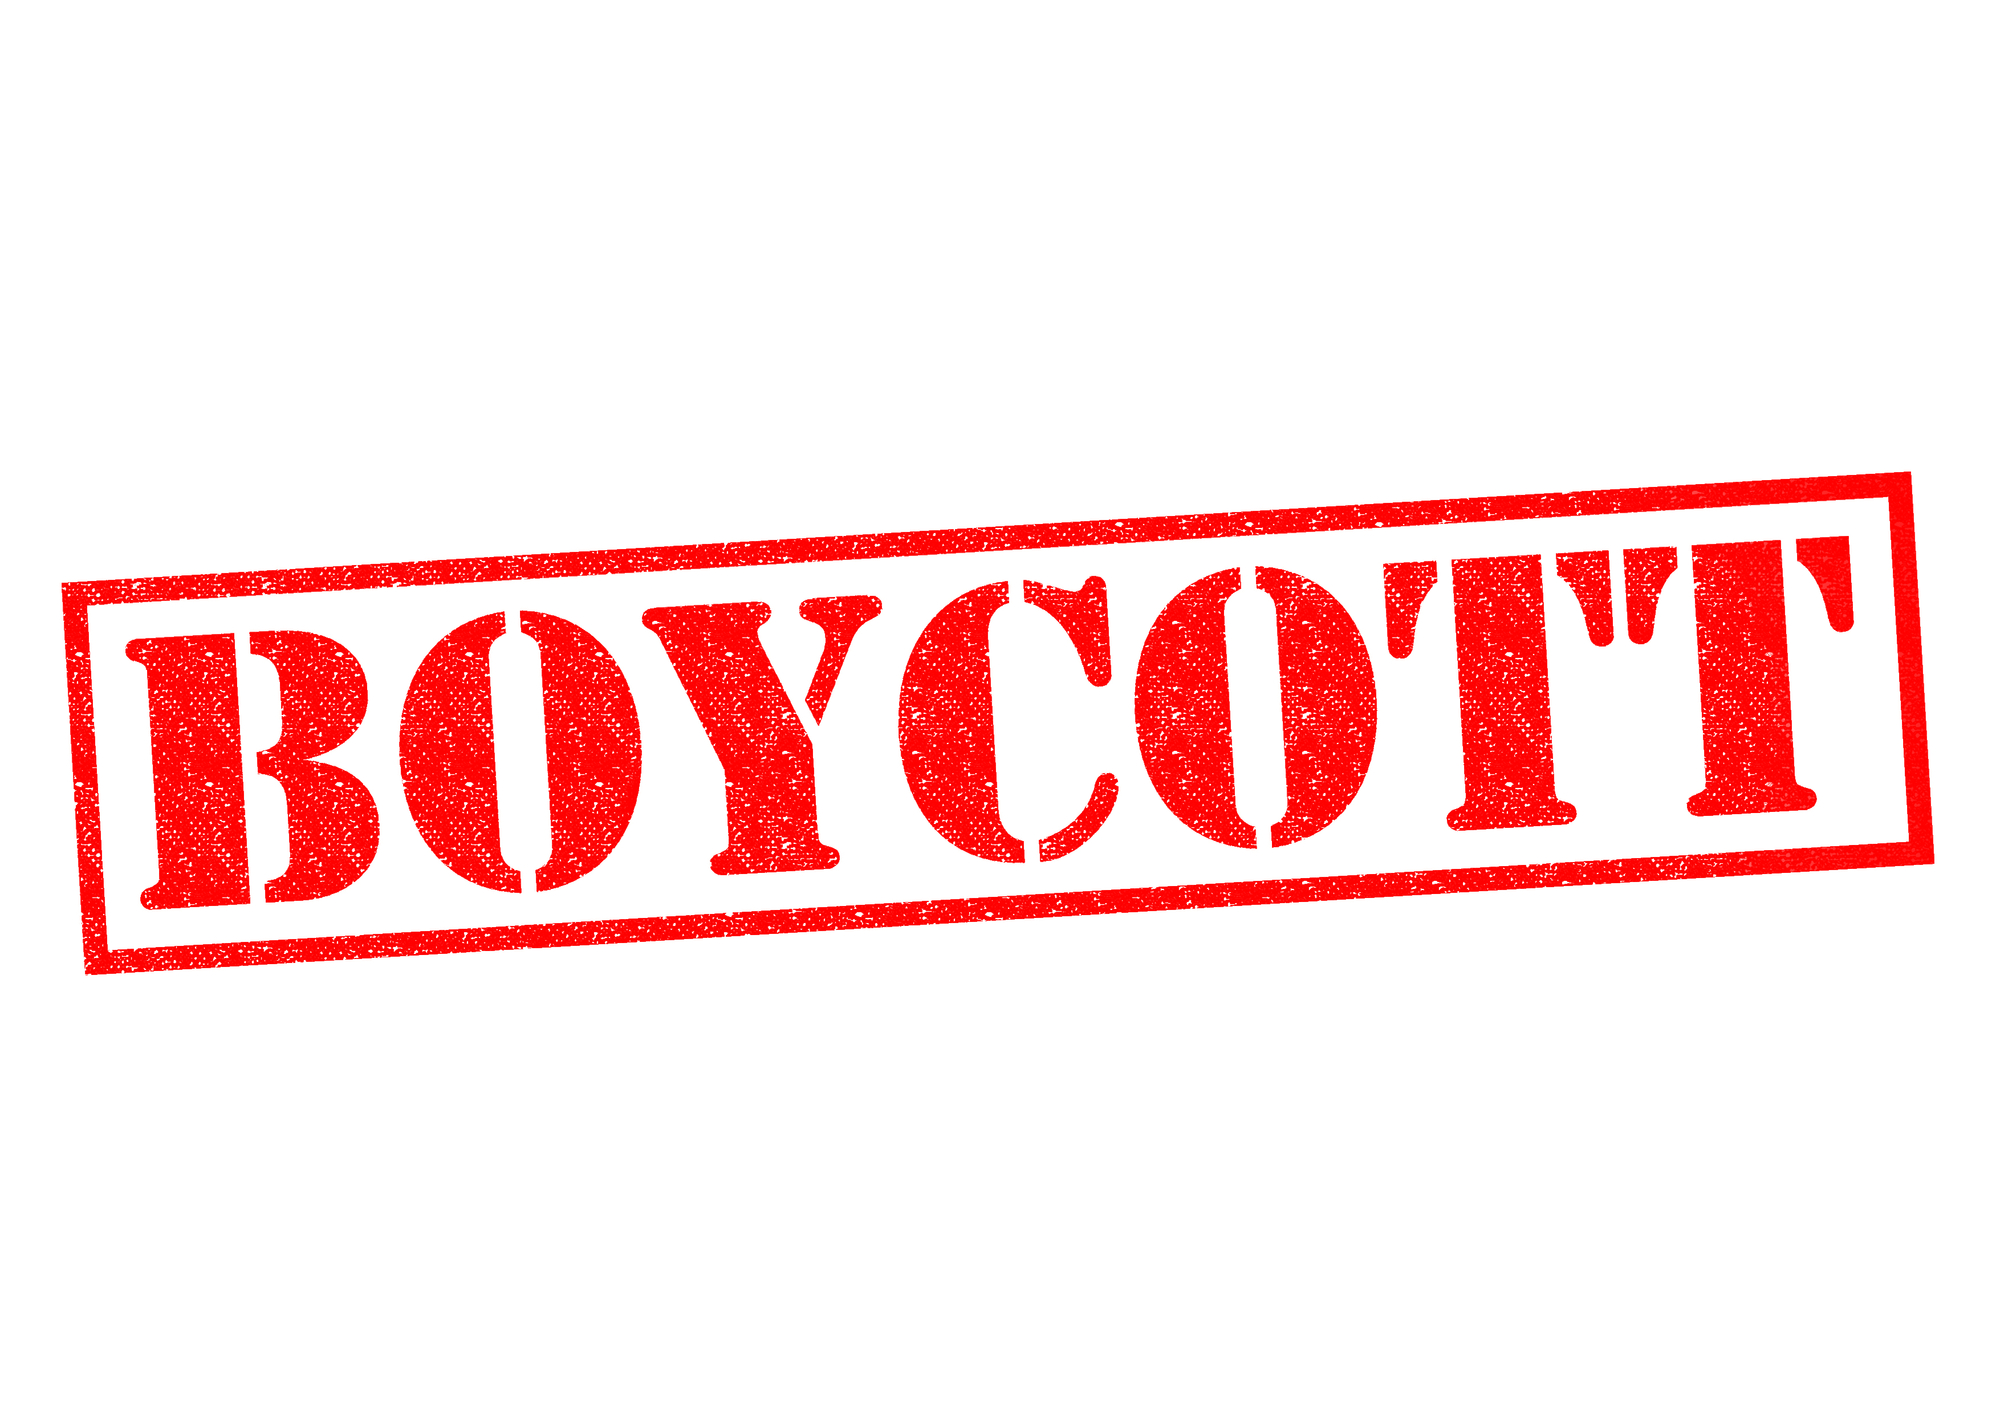 Meat boycott